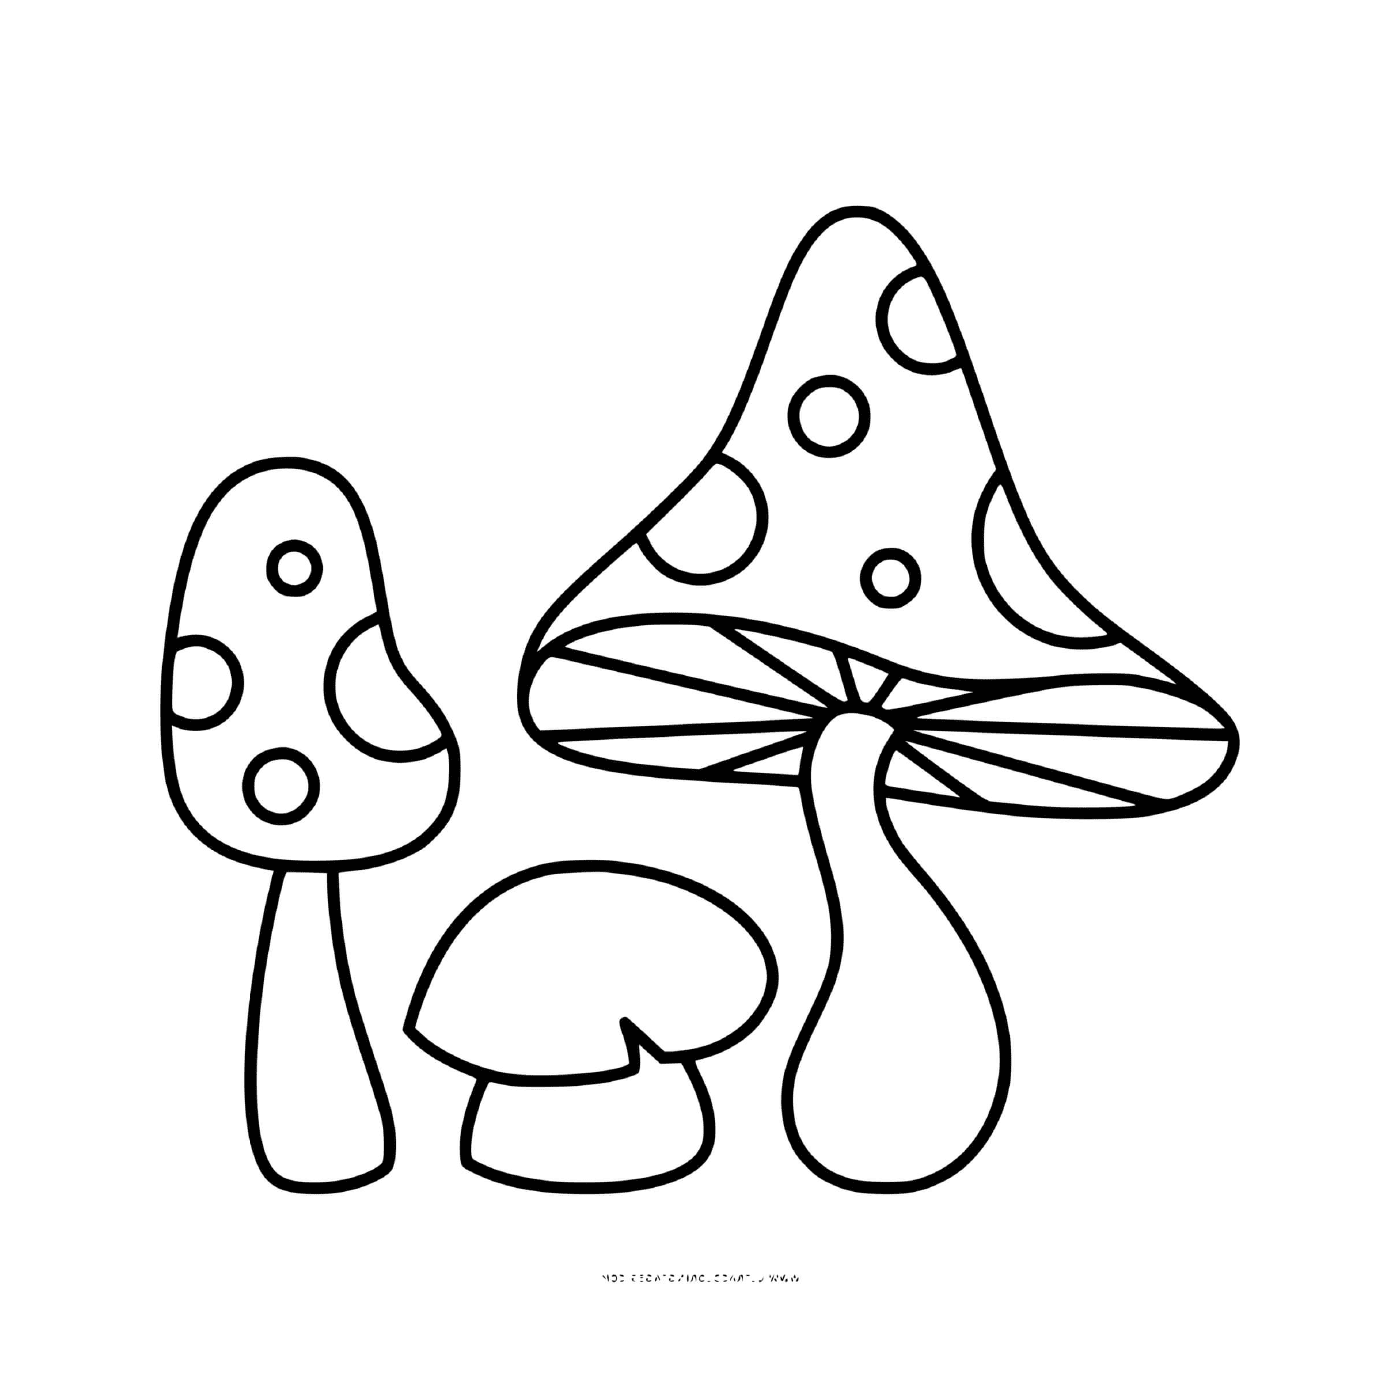 champignon amanite jonquille et phalloide